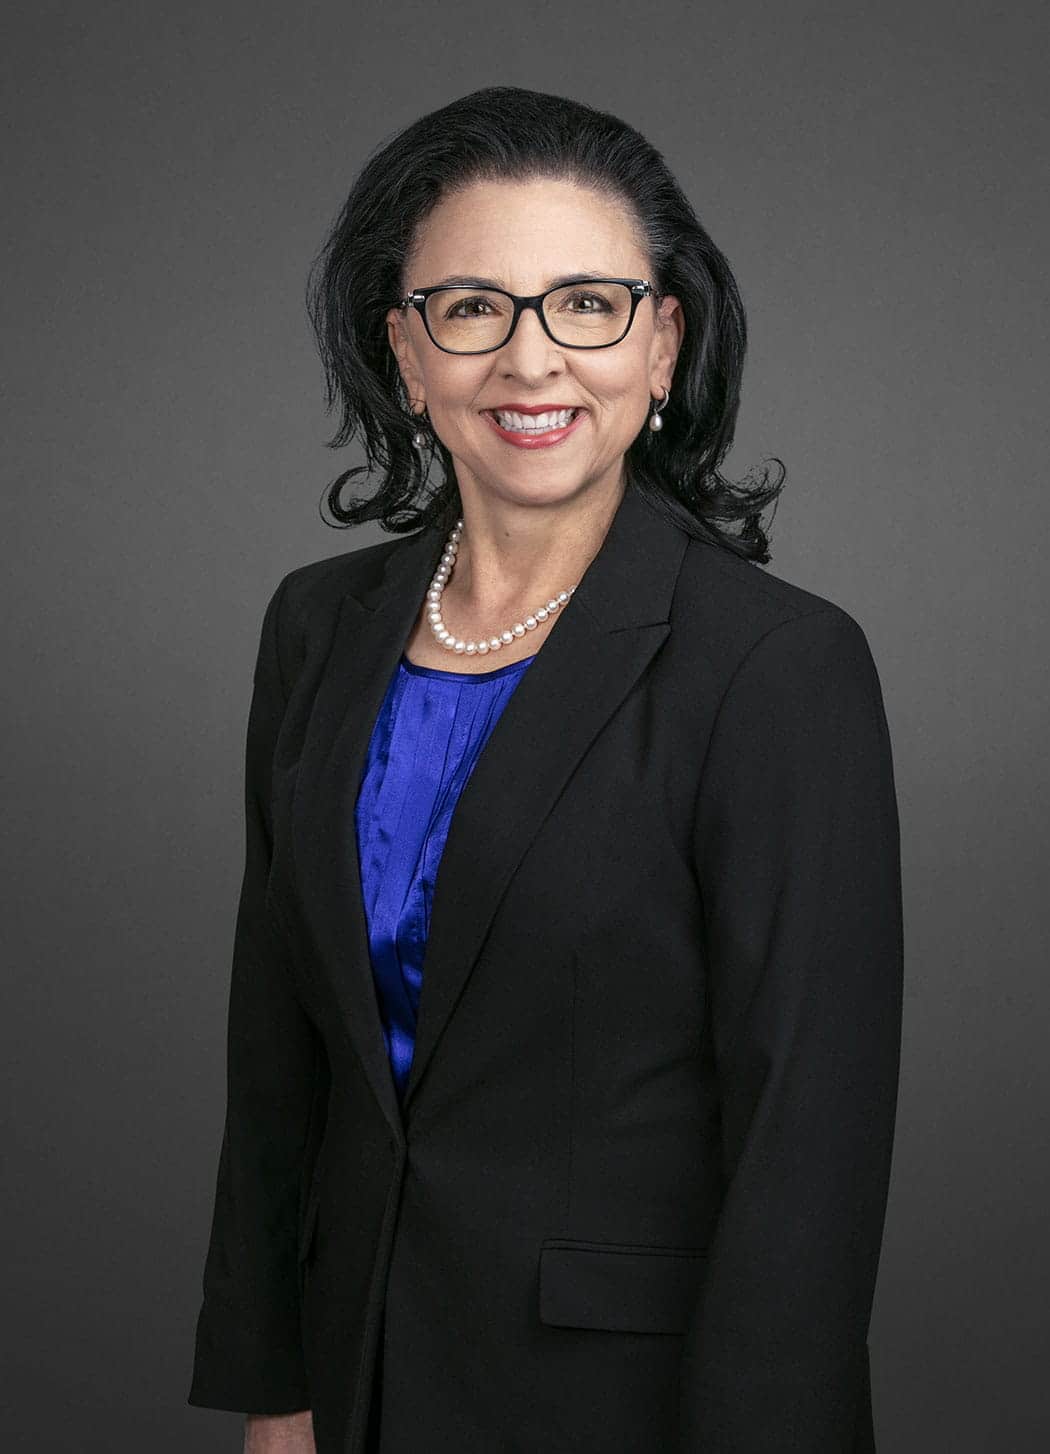 Kathy J. Owen